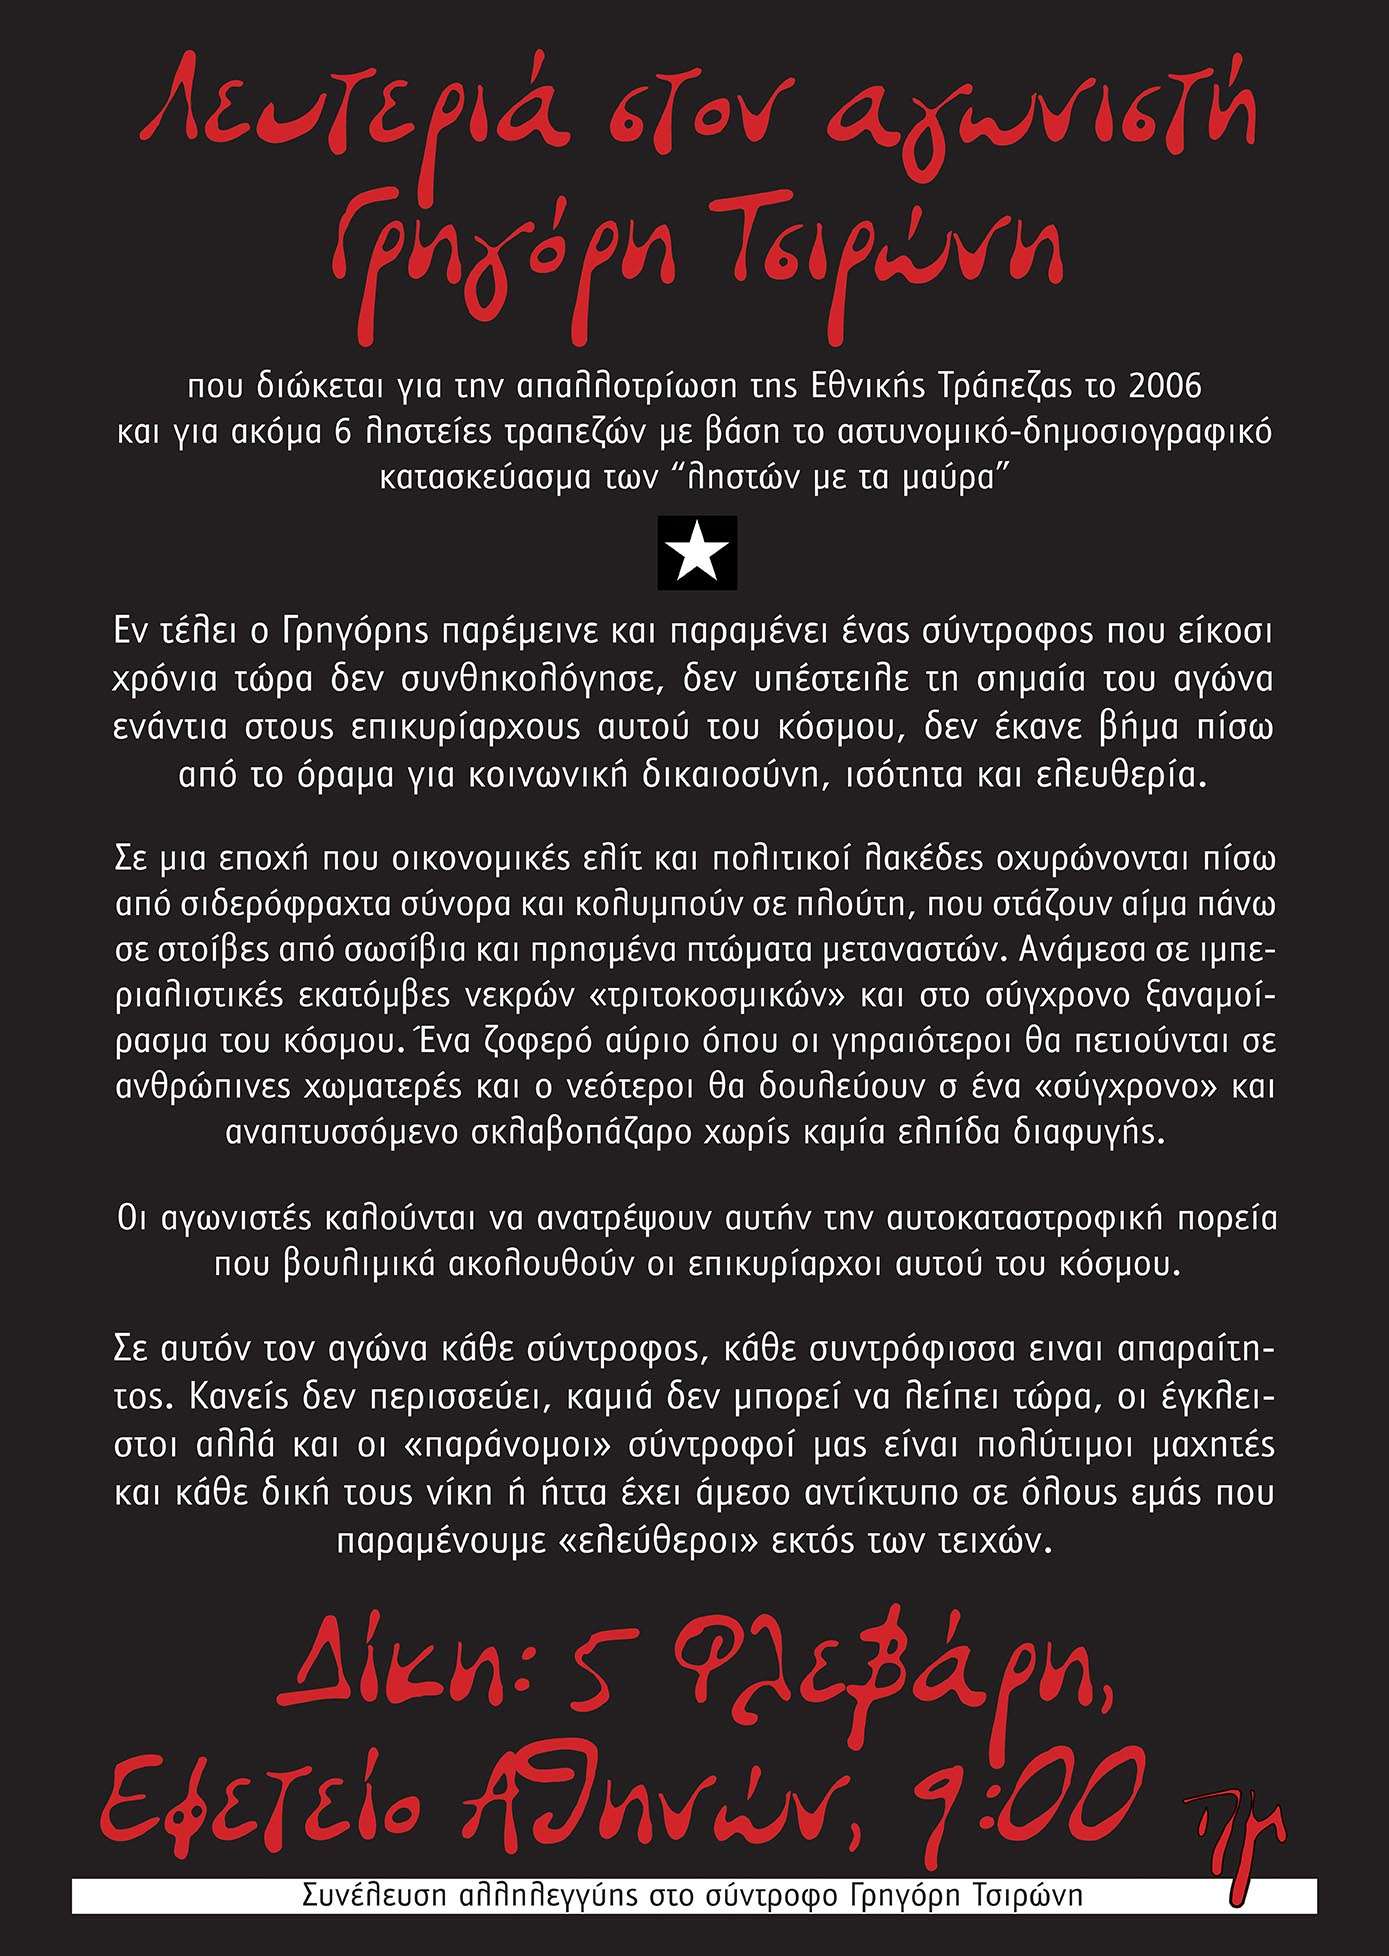 Συνέλευση αλληλεγγύης: Αφίσα για τον σύντροφο Γρηγόρη Τσιρώνη